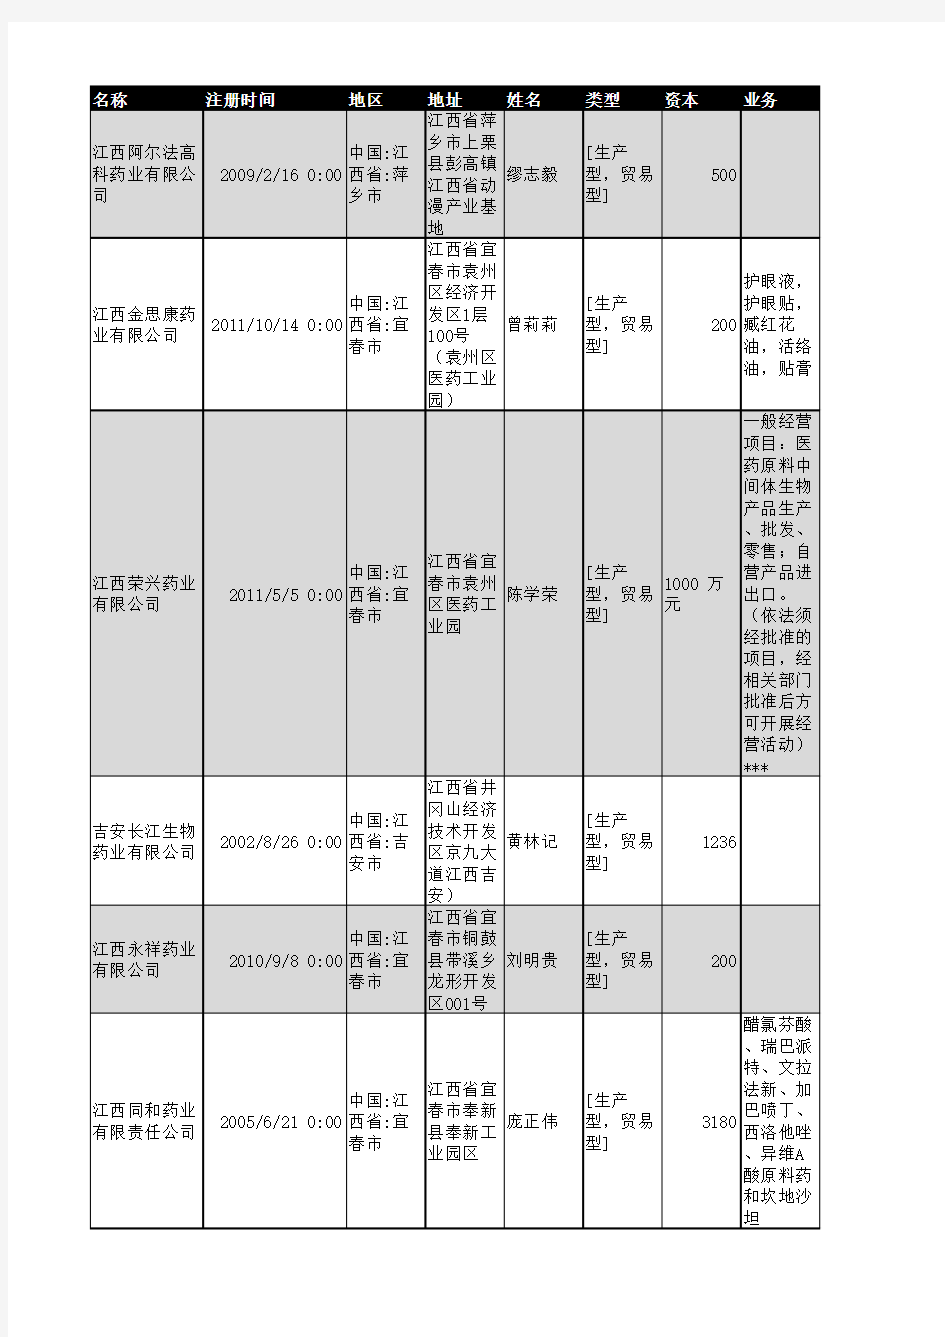 2018年江西省医药行业企业名录496家